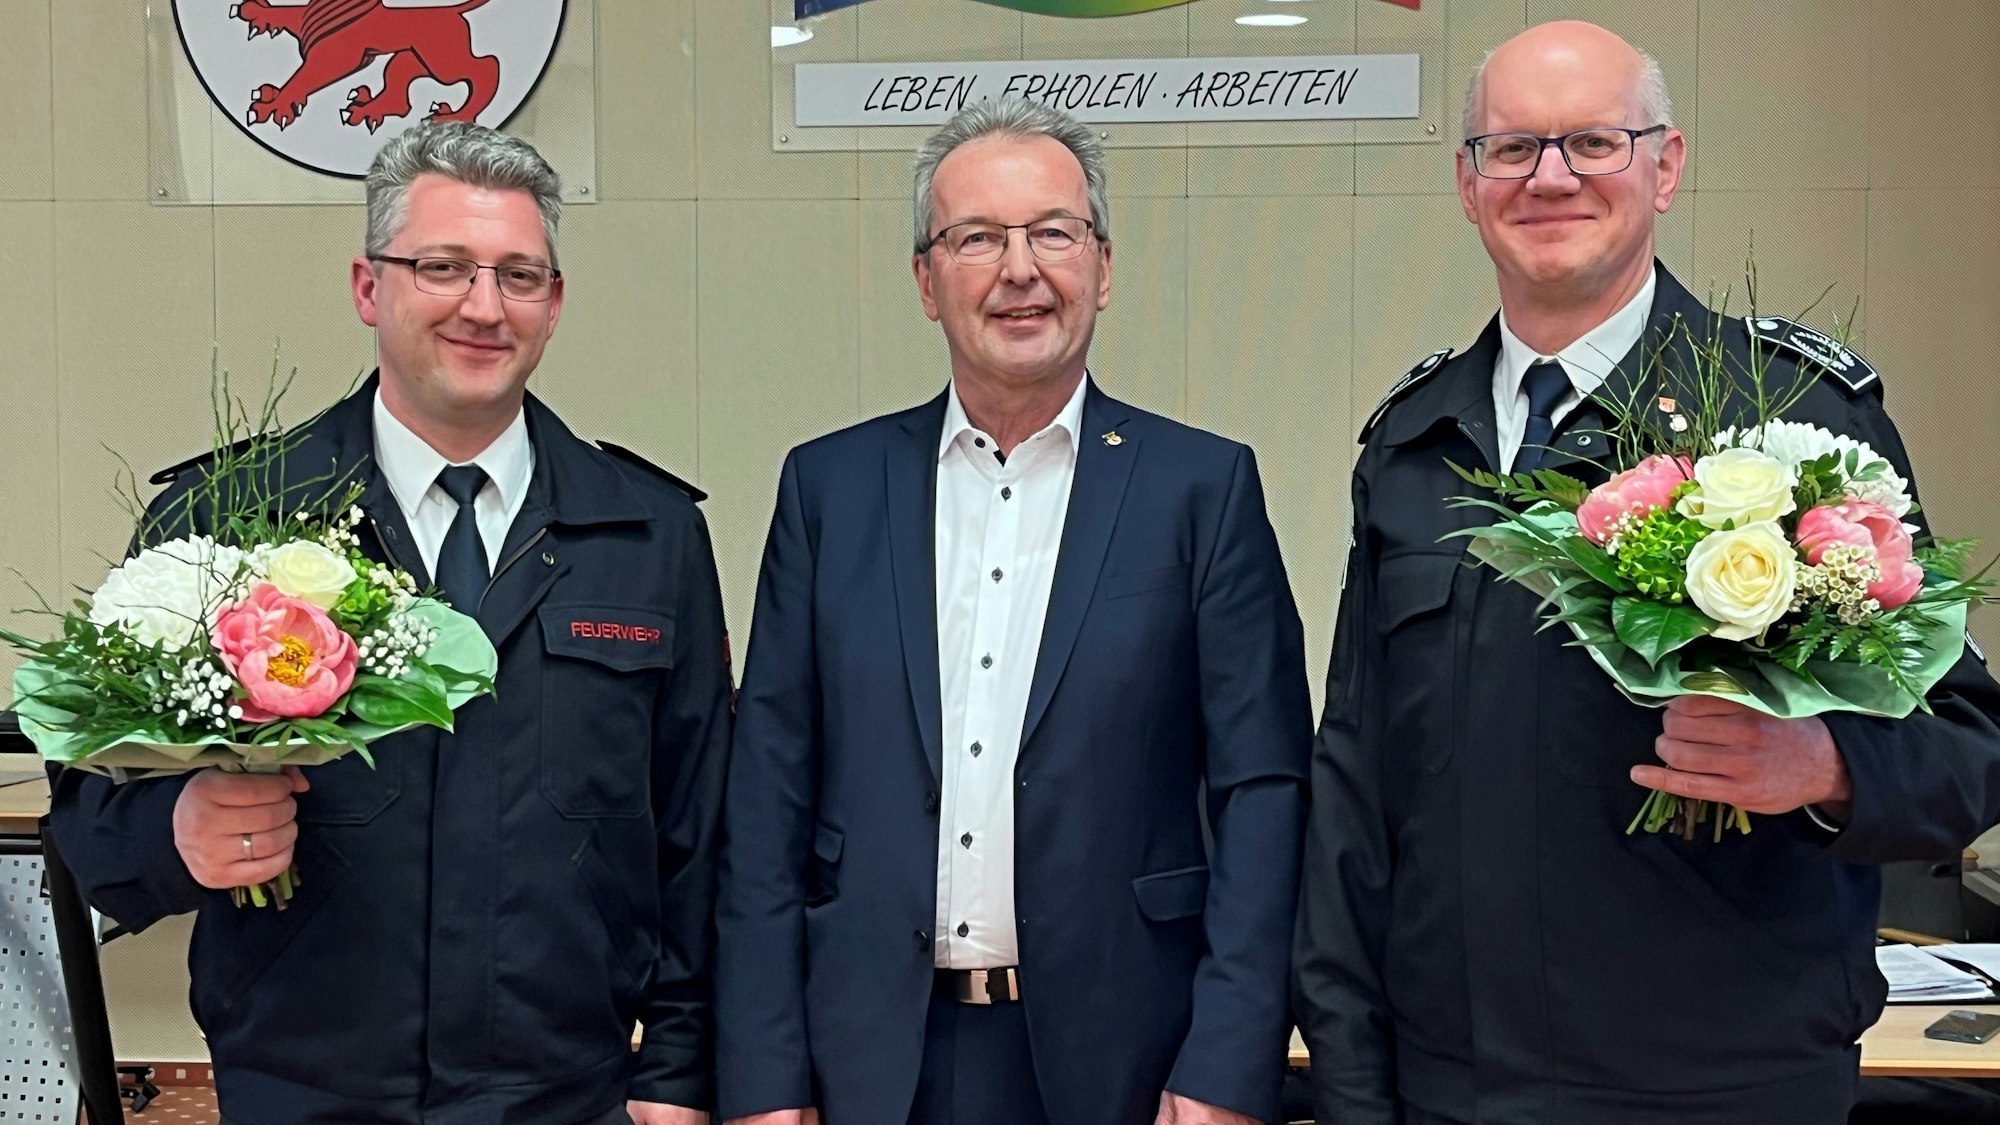 Gruppenbild aus der Ratssitzung: Dennis Doepp, links, folgt zum 1. Juni zunächst kommissarisch als stellvertretender Feuerwehrchef auf André Hombach, rechts. Bürgermeister Rüdiger Gennies übergab beiden ihre Urkunden.